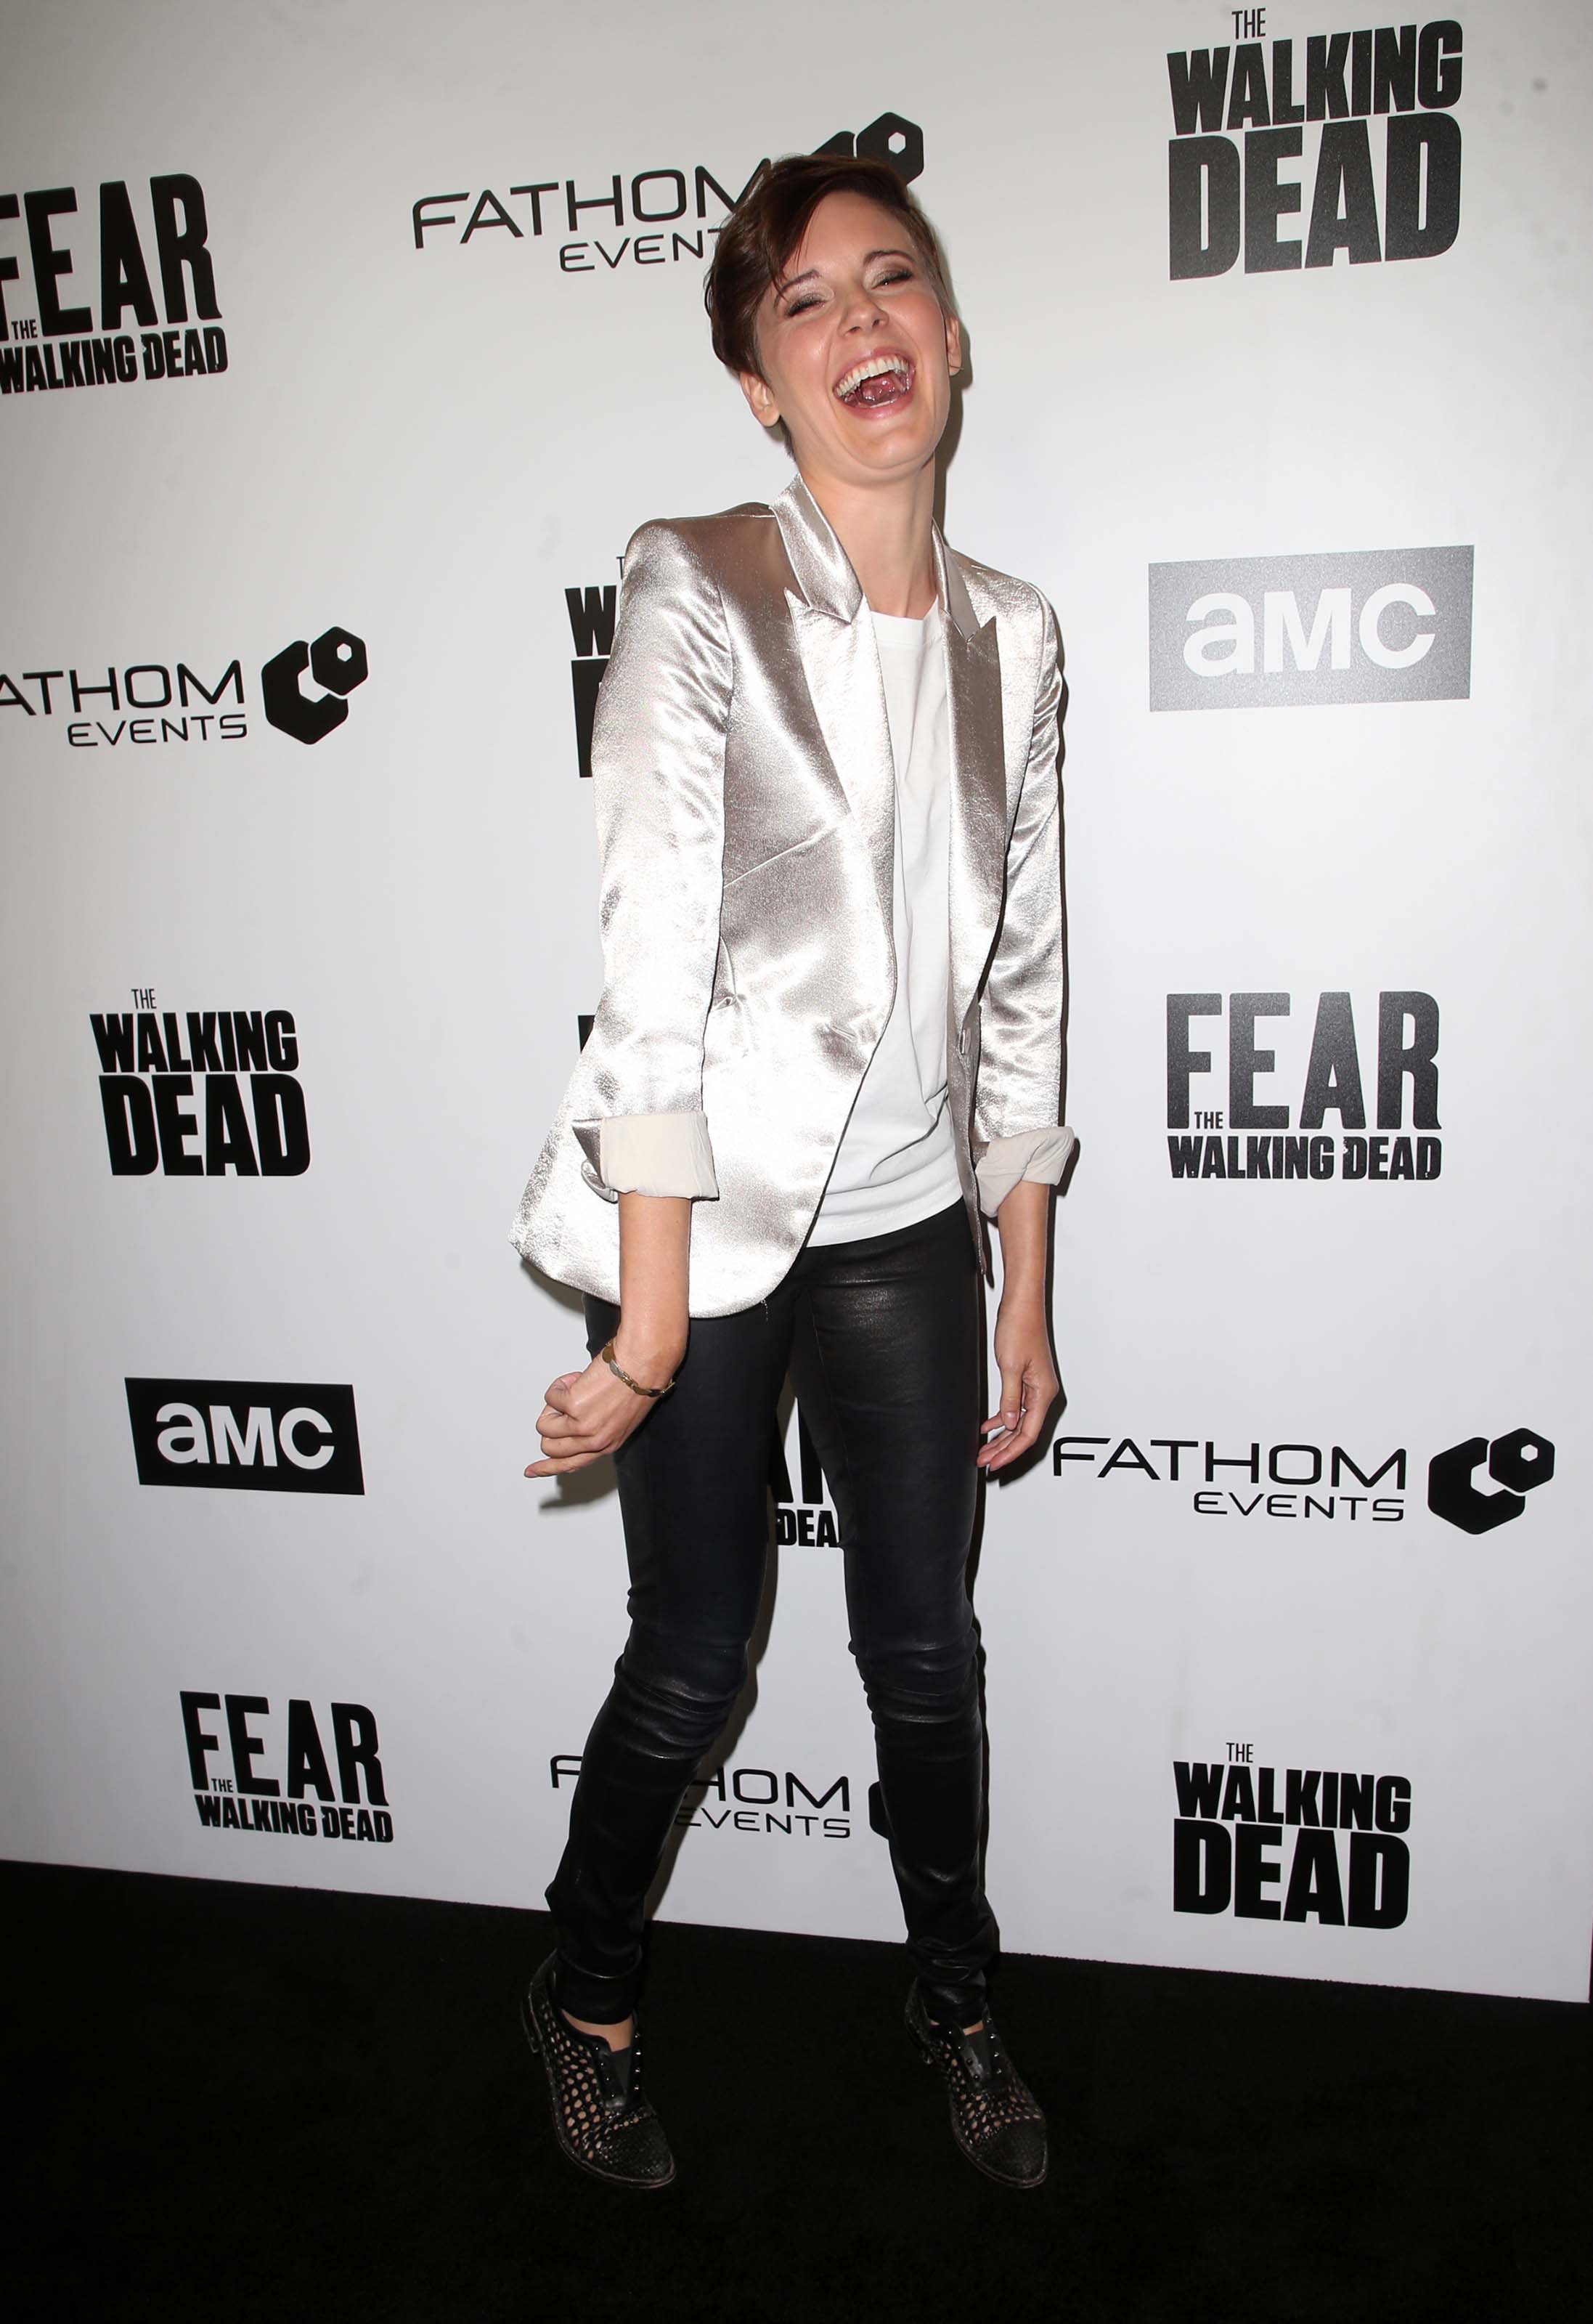 Maggie Grace attends FYC The Walking Dead and Fear the Walking Dead